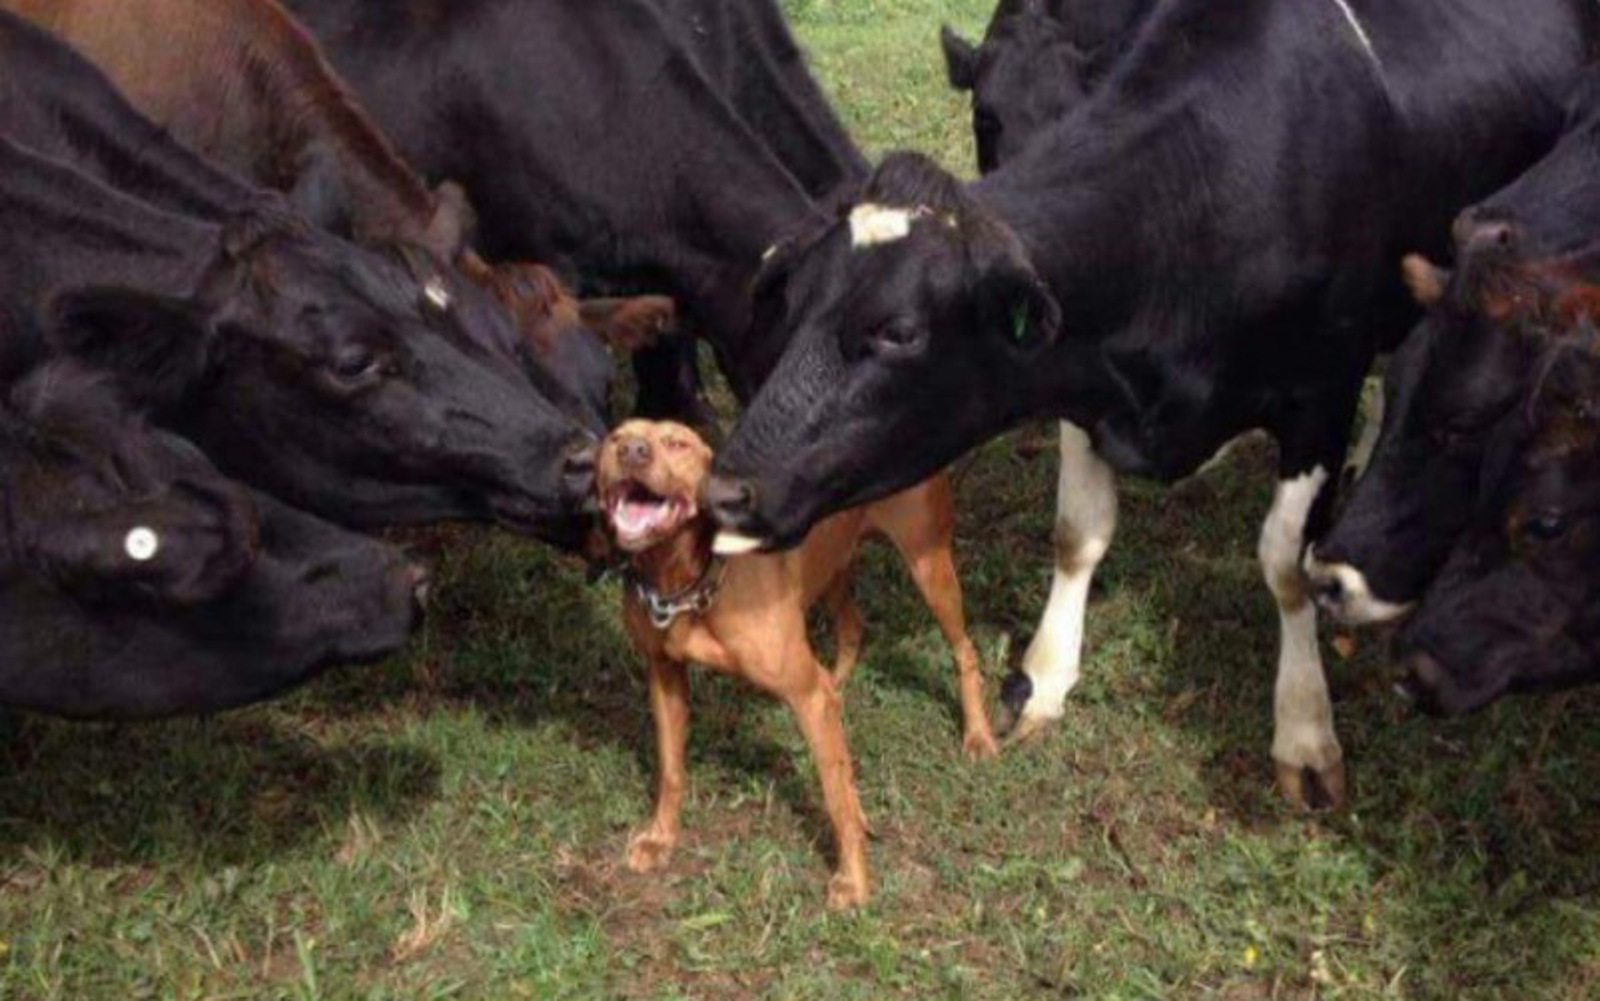 cows-kissing-dog-802x8001.jpg